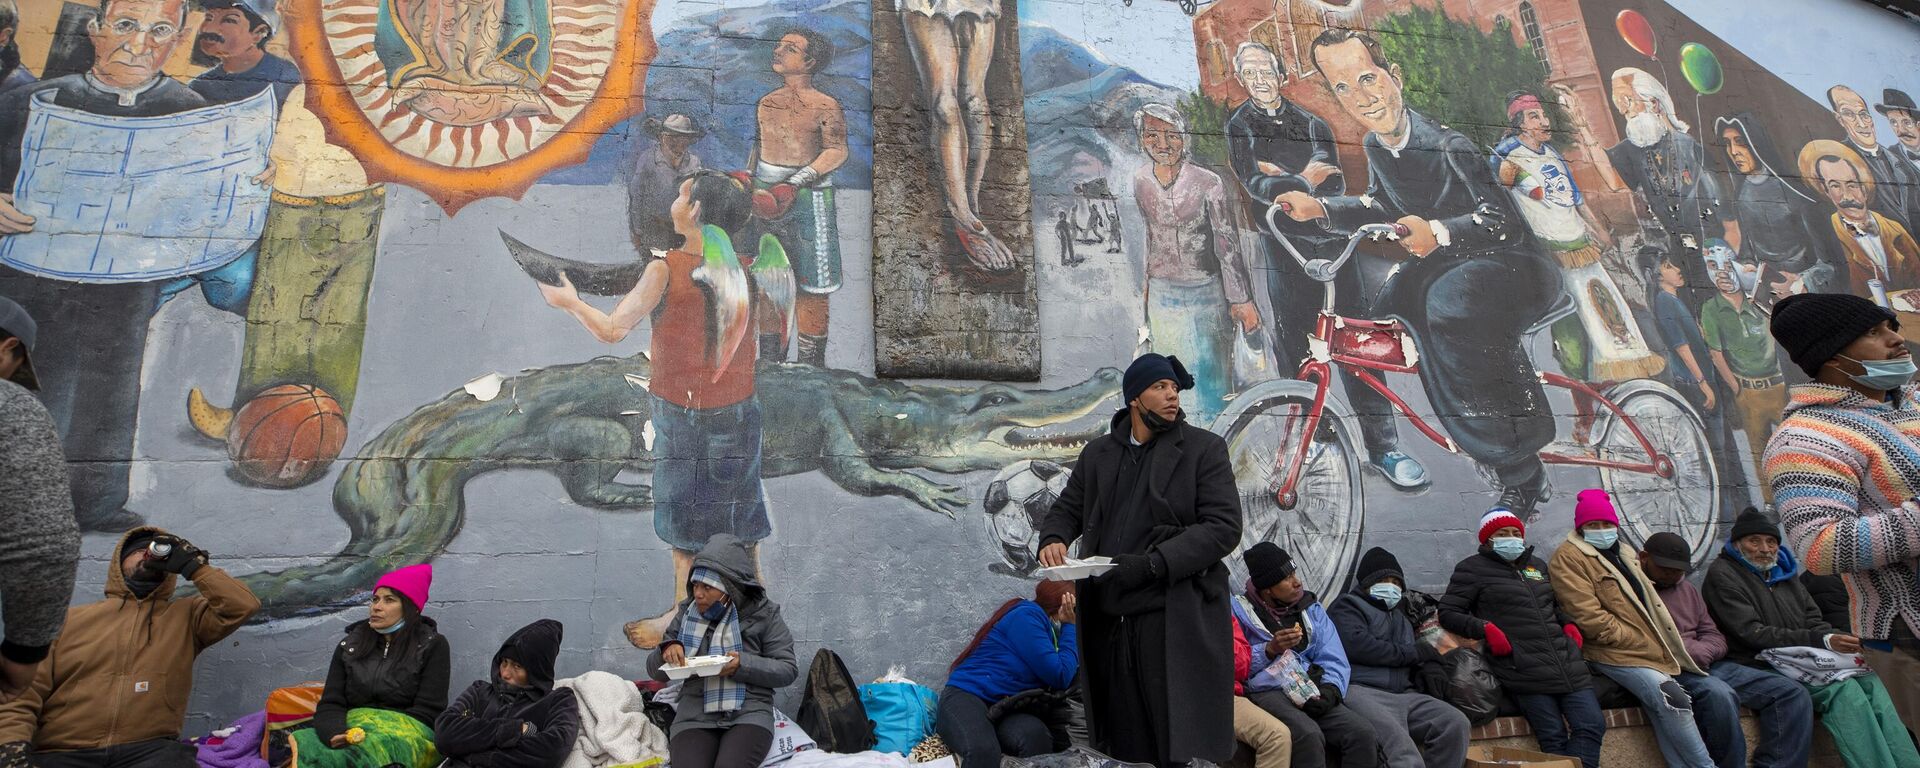 Migrantes comen y esperan ayuda mientras acampan en una calle del centro de El Paso, Texas, el domingo 18 de diciembre de 2022.  - Sputnik Mundo, 1920, 28.01.2023